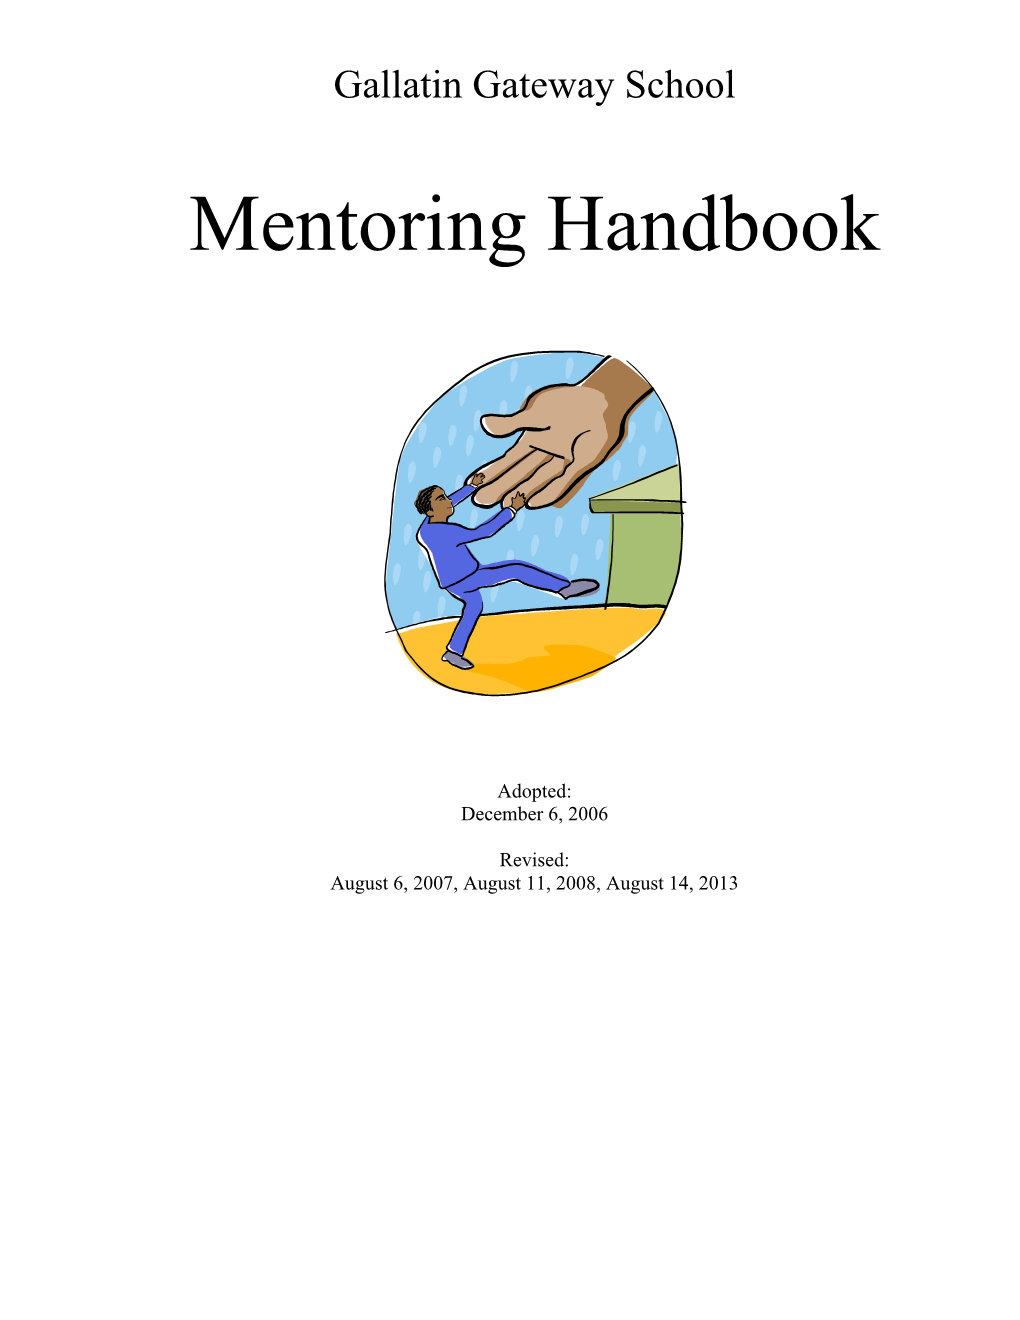 Mentoring Handbook